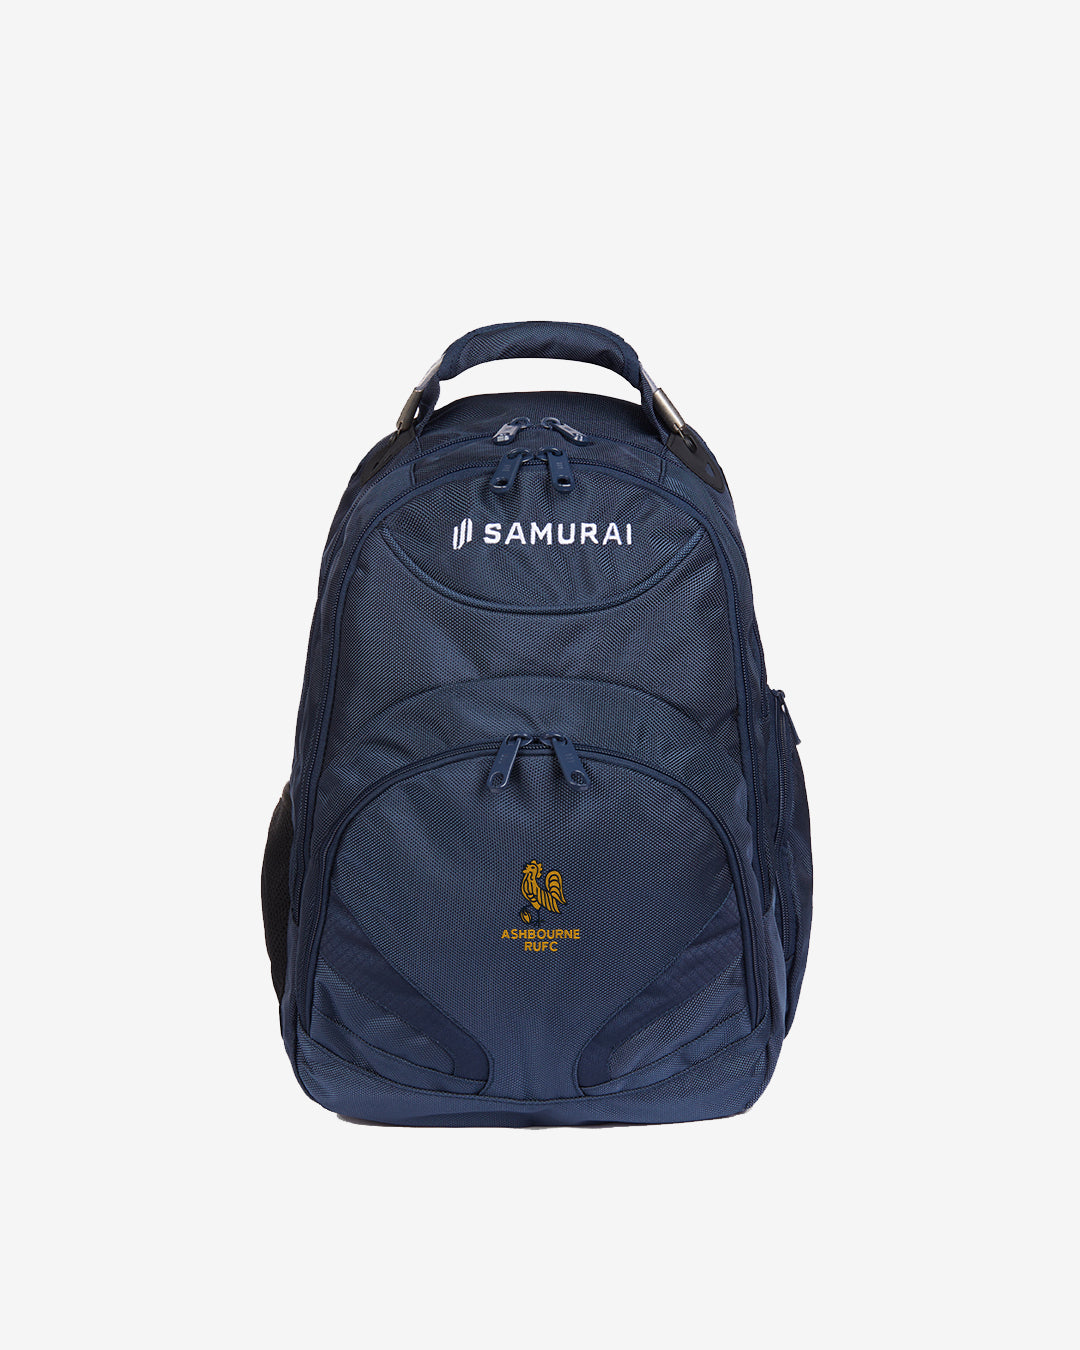 Ashbourne RFC - U:0213 - Backpack - Navy